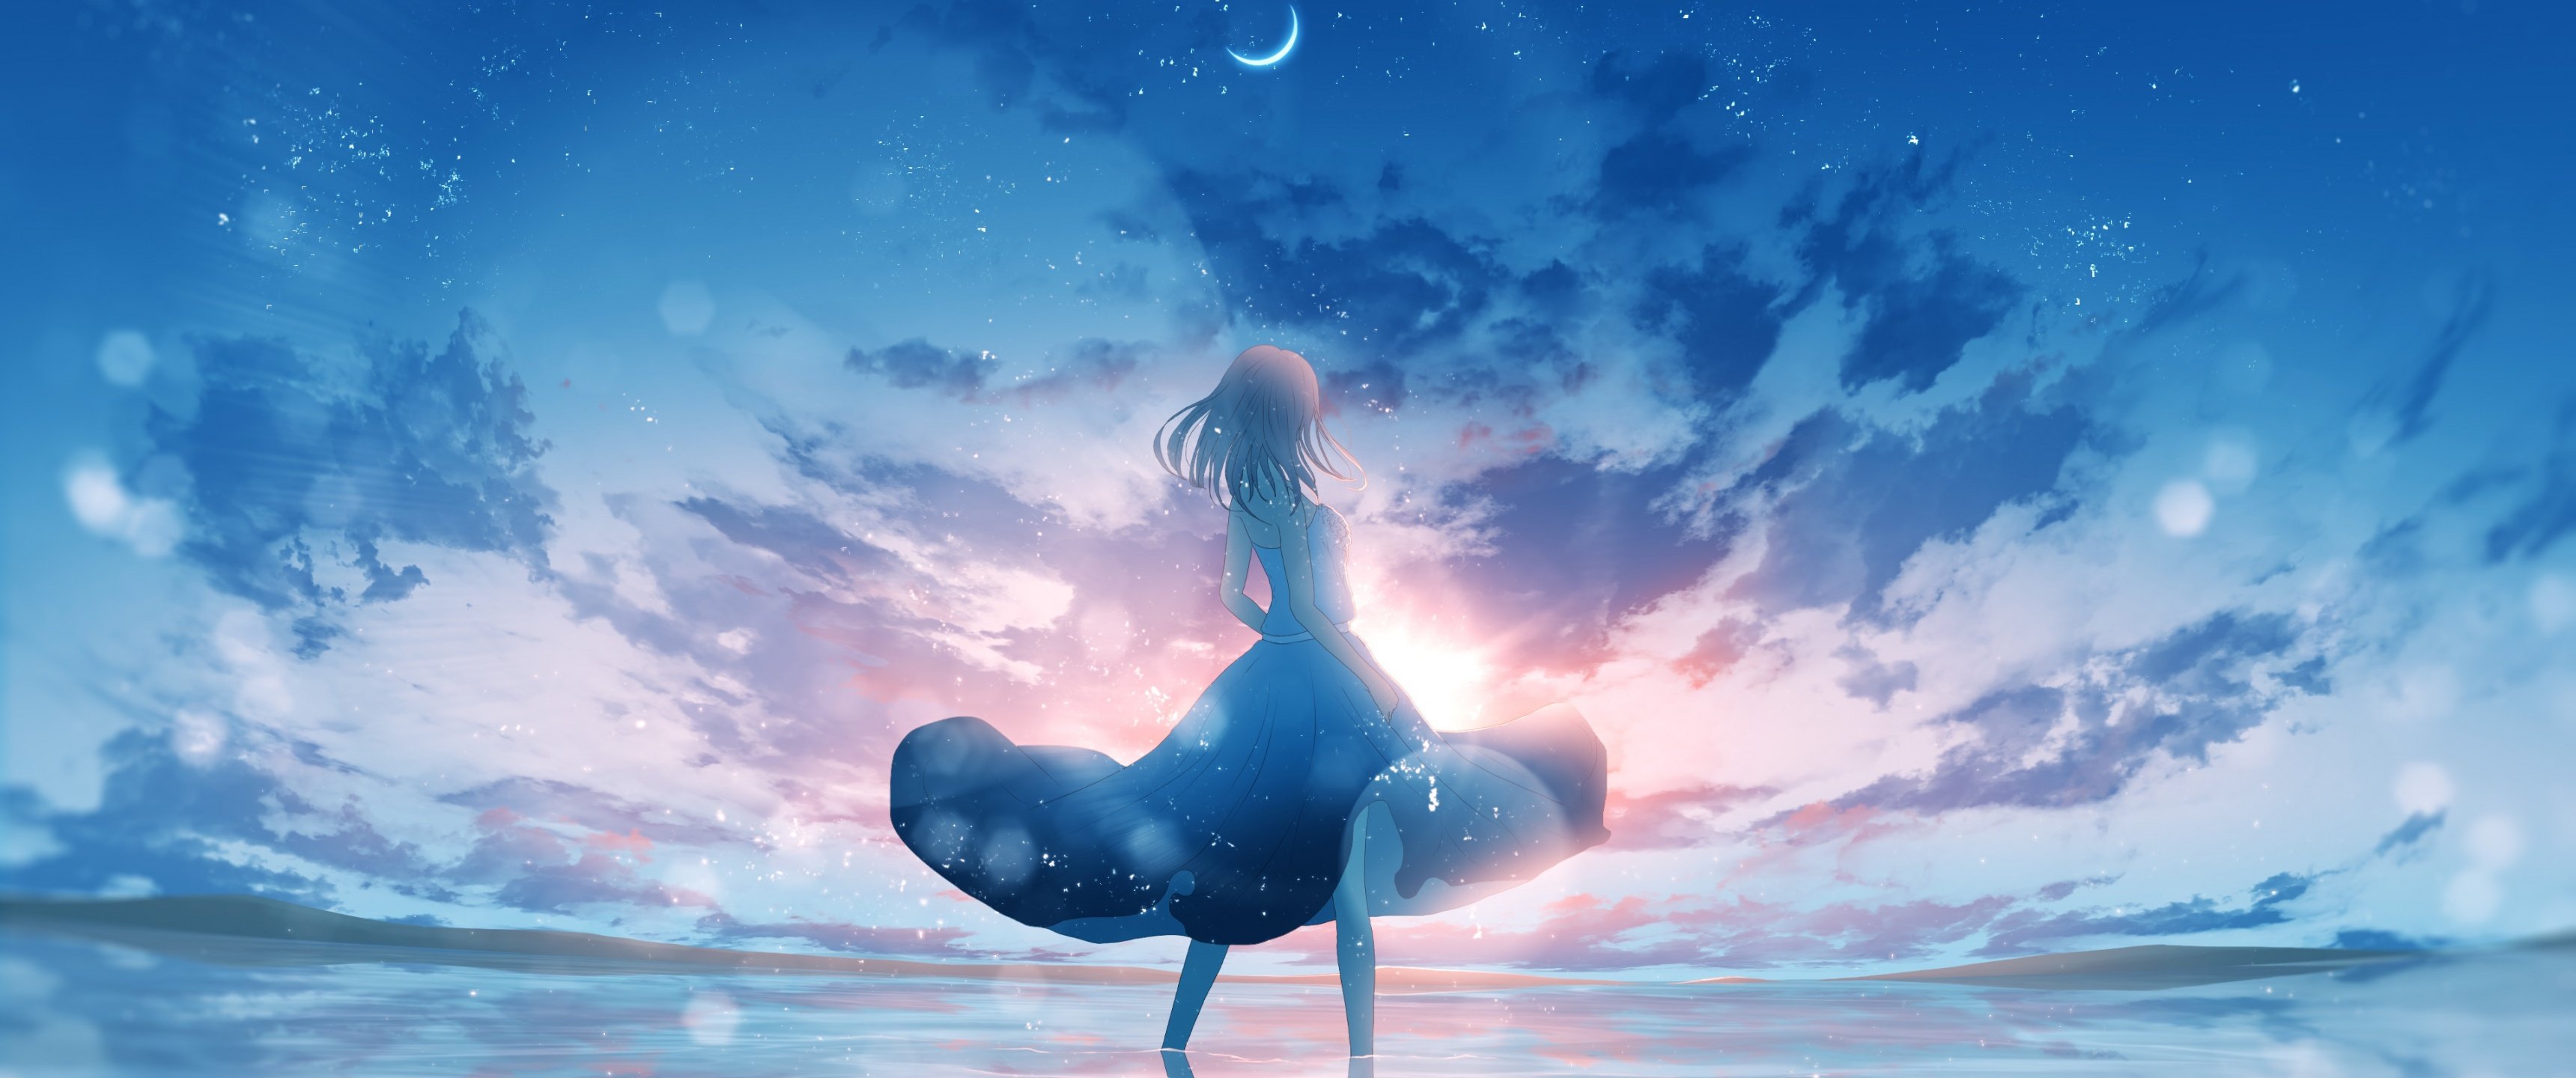 Anime girl Wallpaper 4K, Aesthetic, Dream, Happy girl